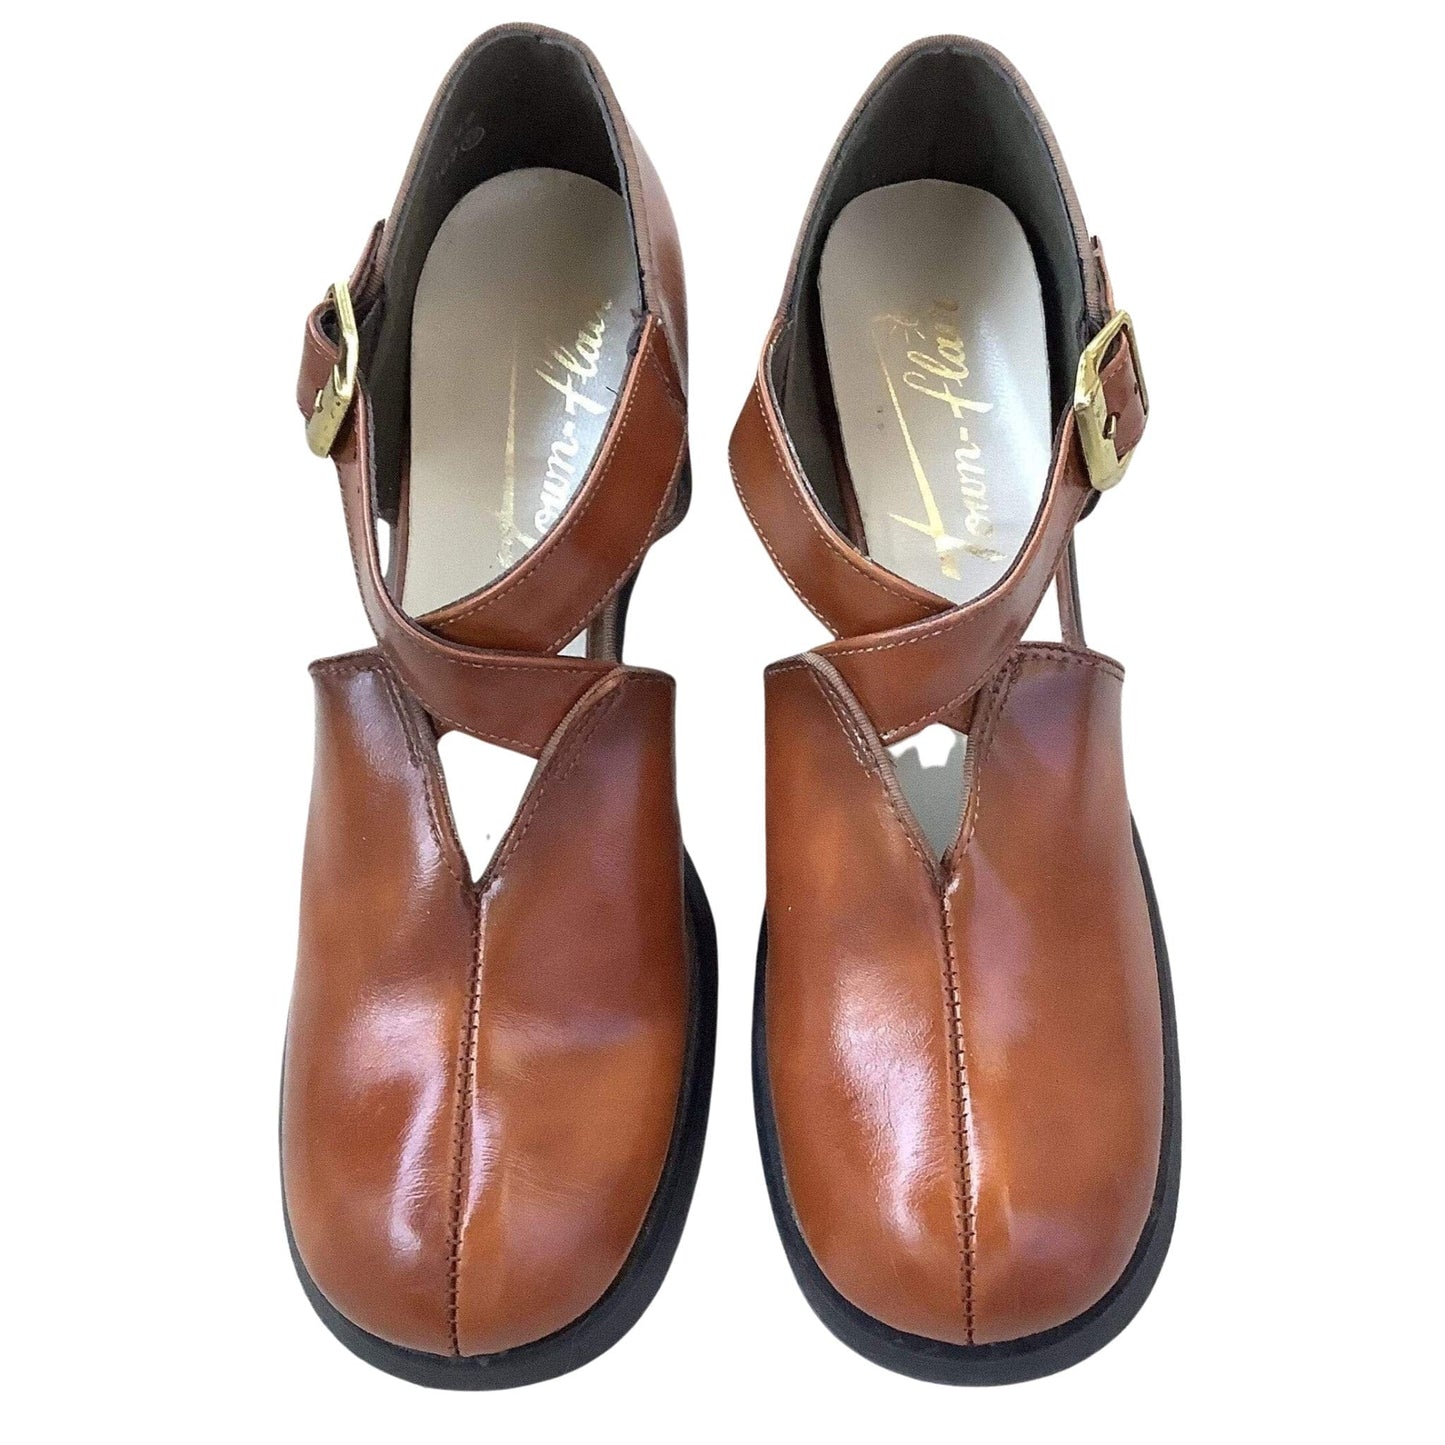 1960s Mary Jane Heels 8 / Brown / Vintage 1960s